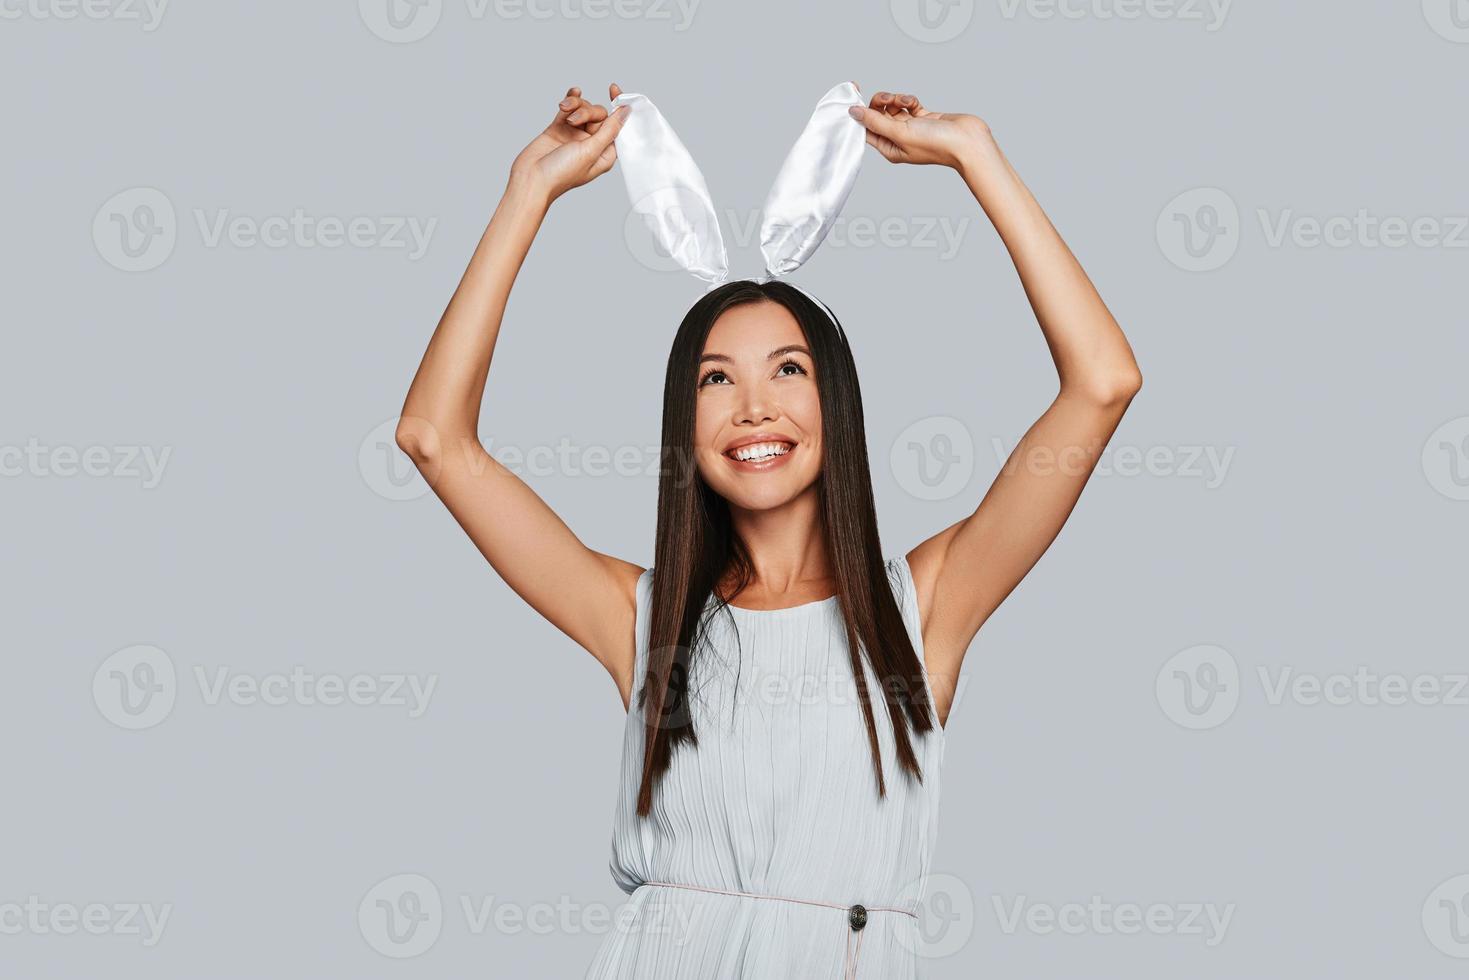 håller på med vad som helst hon vill ha. skön ung asiatisk kvinna rörande henne kanin öron och leende medan stående mot grå bakgrund foto